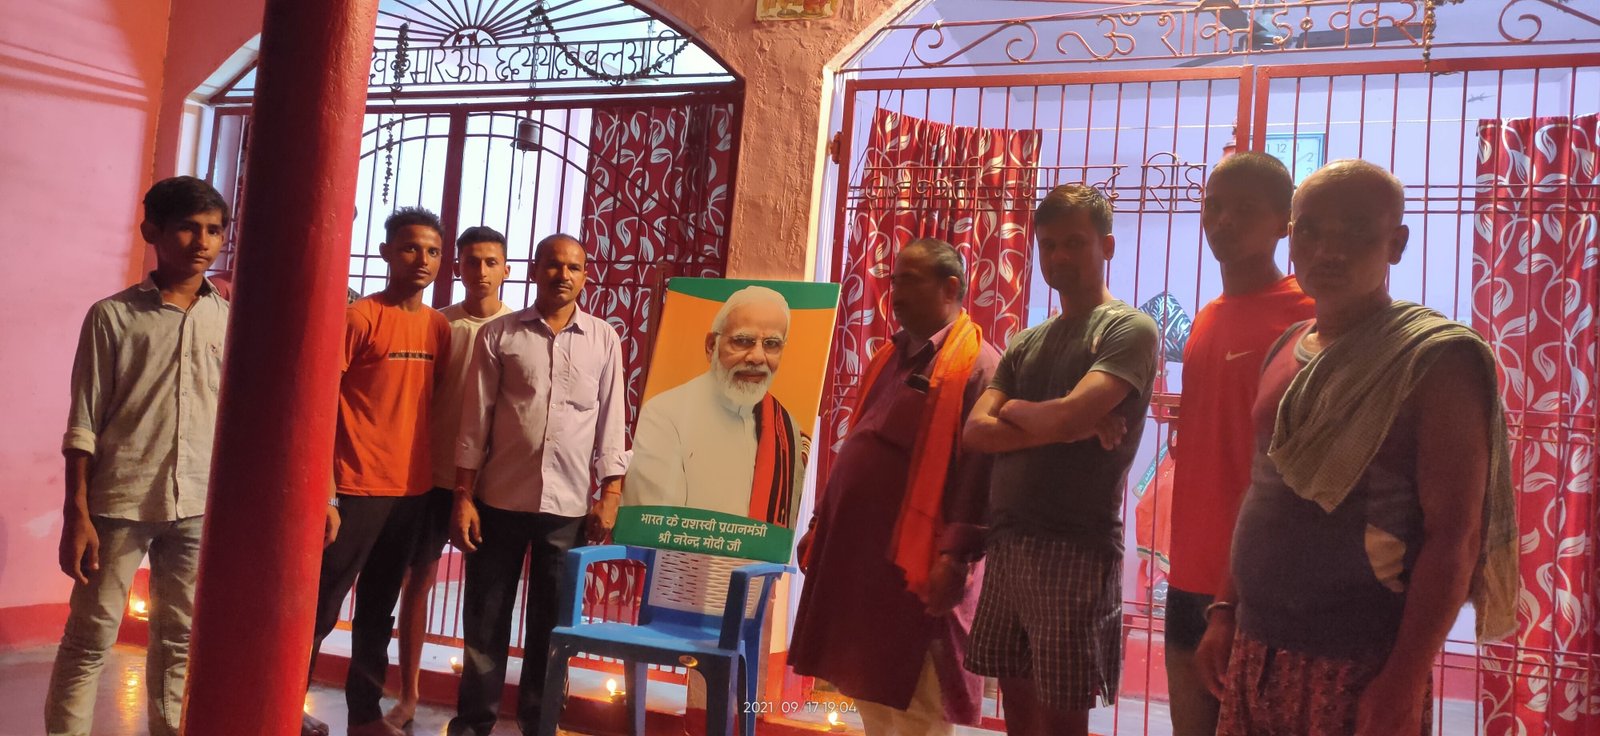 PM मोदी के 71वें जन्मदि पर : खगड़िया भाजपा नेताओं ने 71 किलो लड्डू का भोग बजरंग बली स्थान पर चढ़ा कर उनके दिर्घायु होने की कामना की..